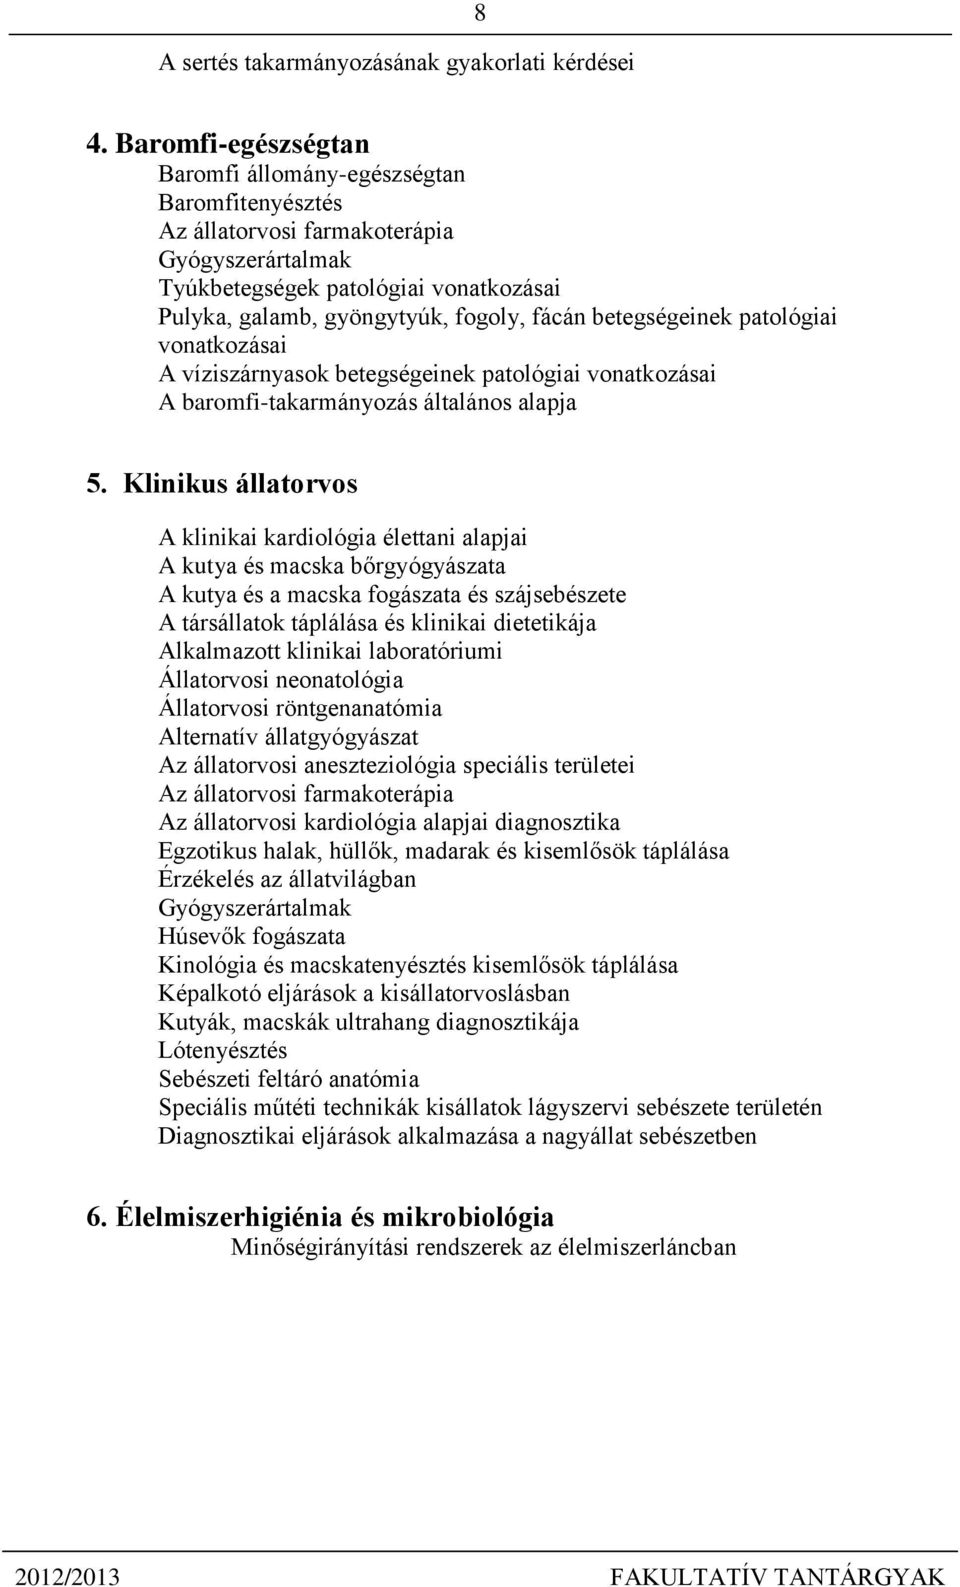 FAKULTATÍV TANTÁRGYAI - PDF Ingyenes letöltés